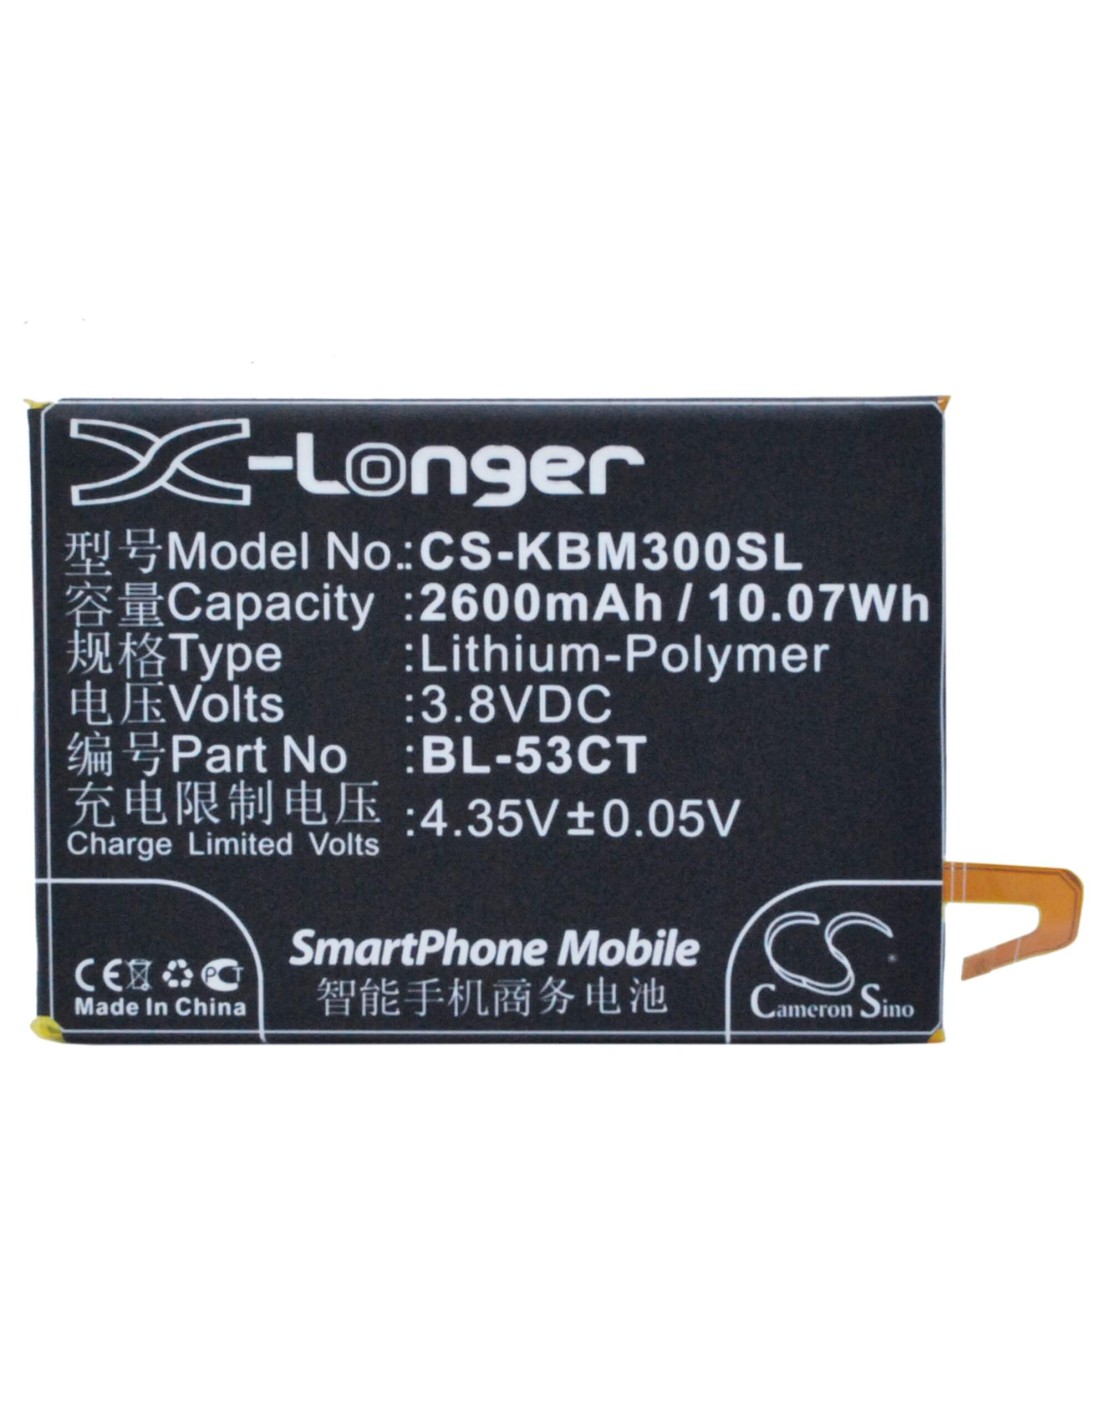 Battery for KOOBEE M3 3.8V, 2650mAh - 10.07Wh